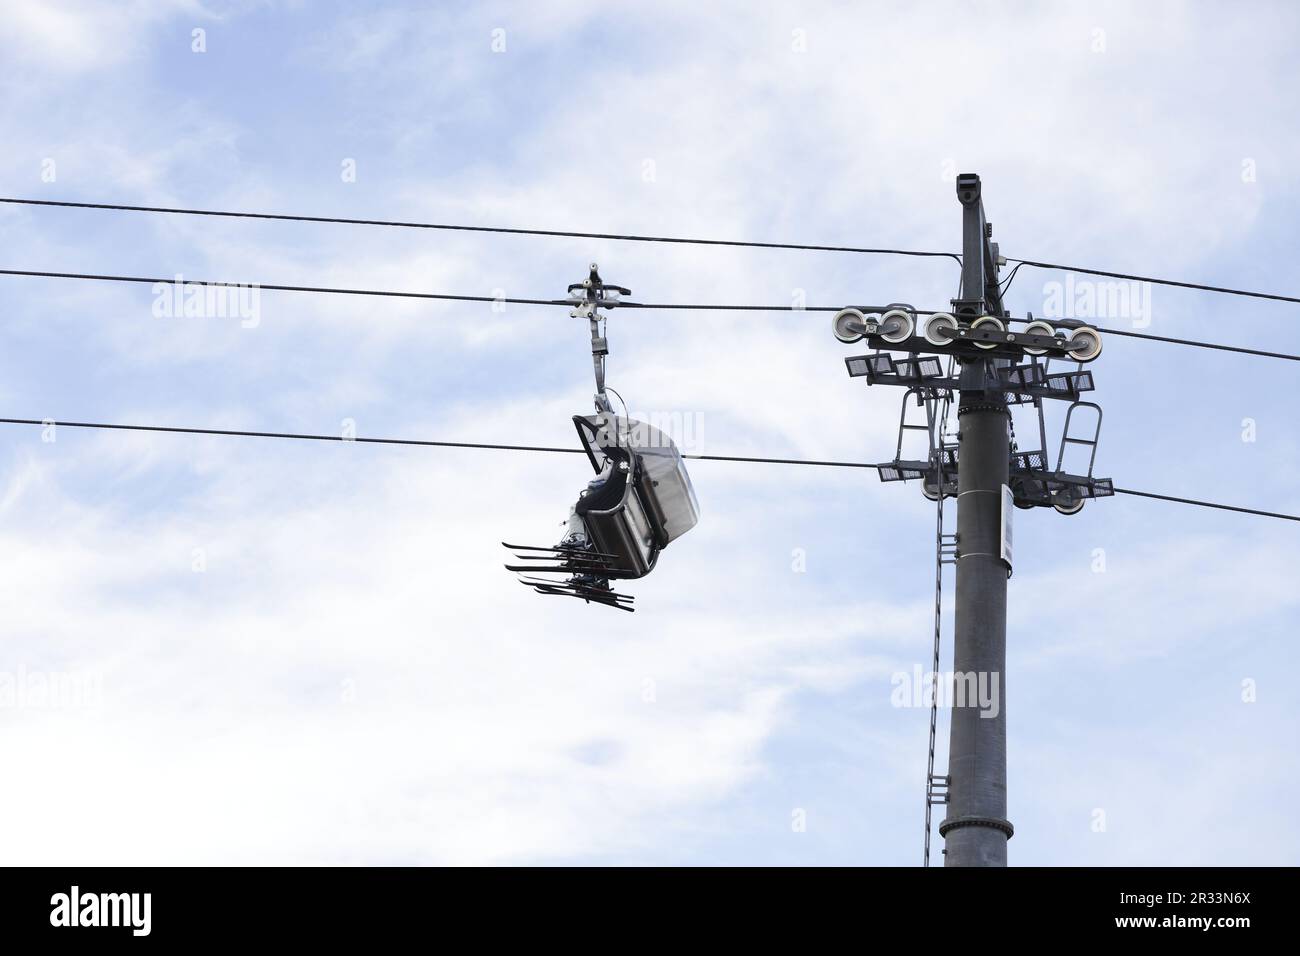 Skier in chairlift, Innsbruck, Tyrol Stock Photo